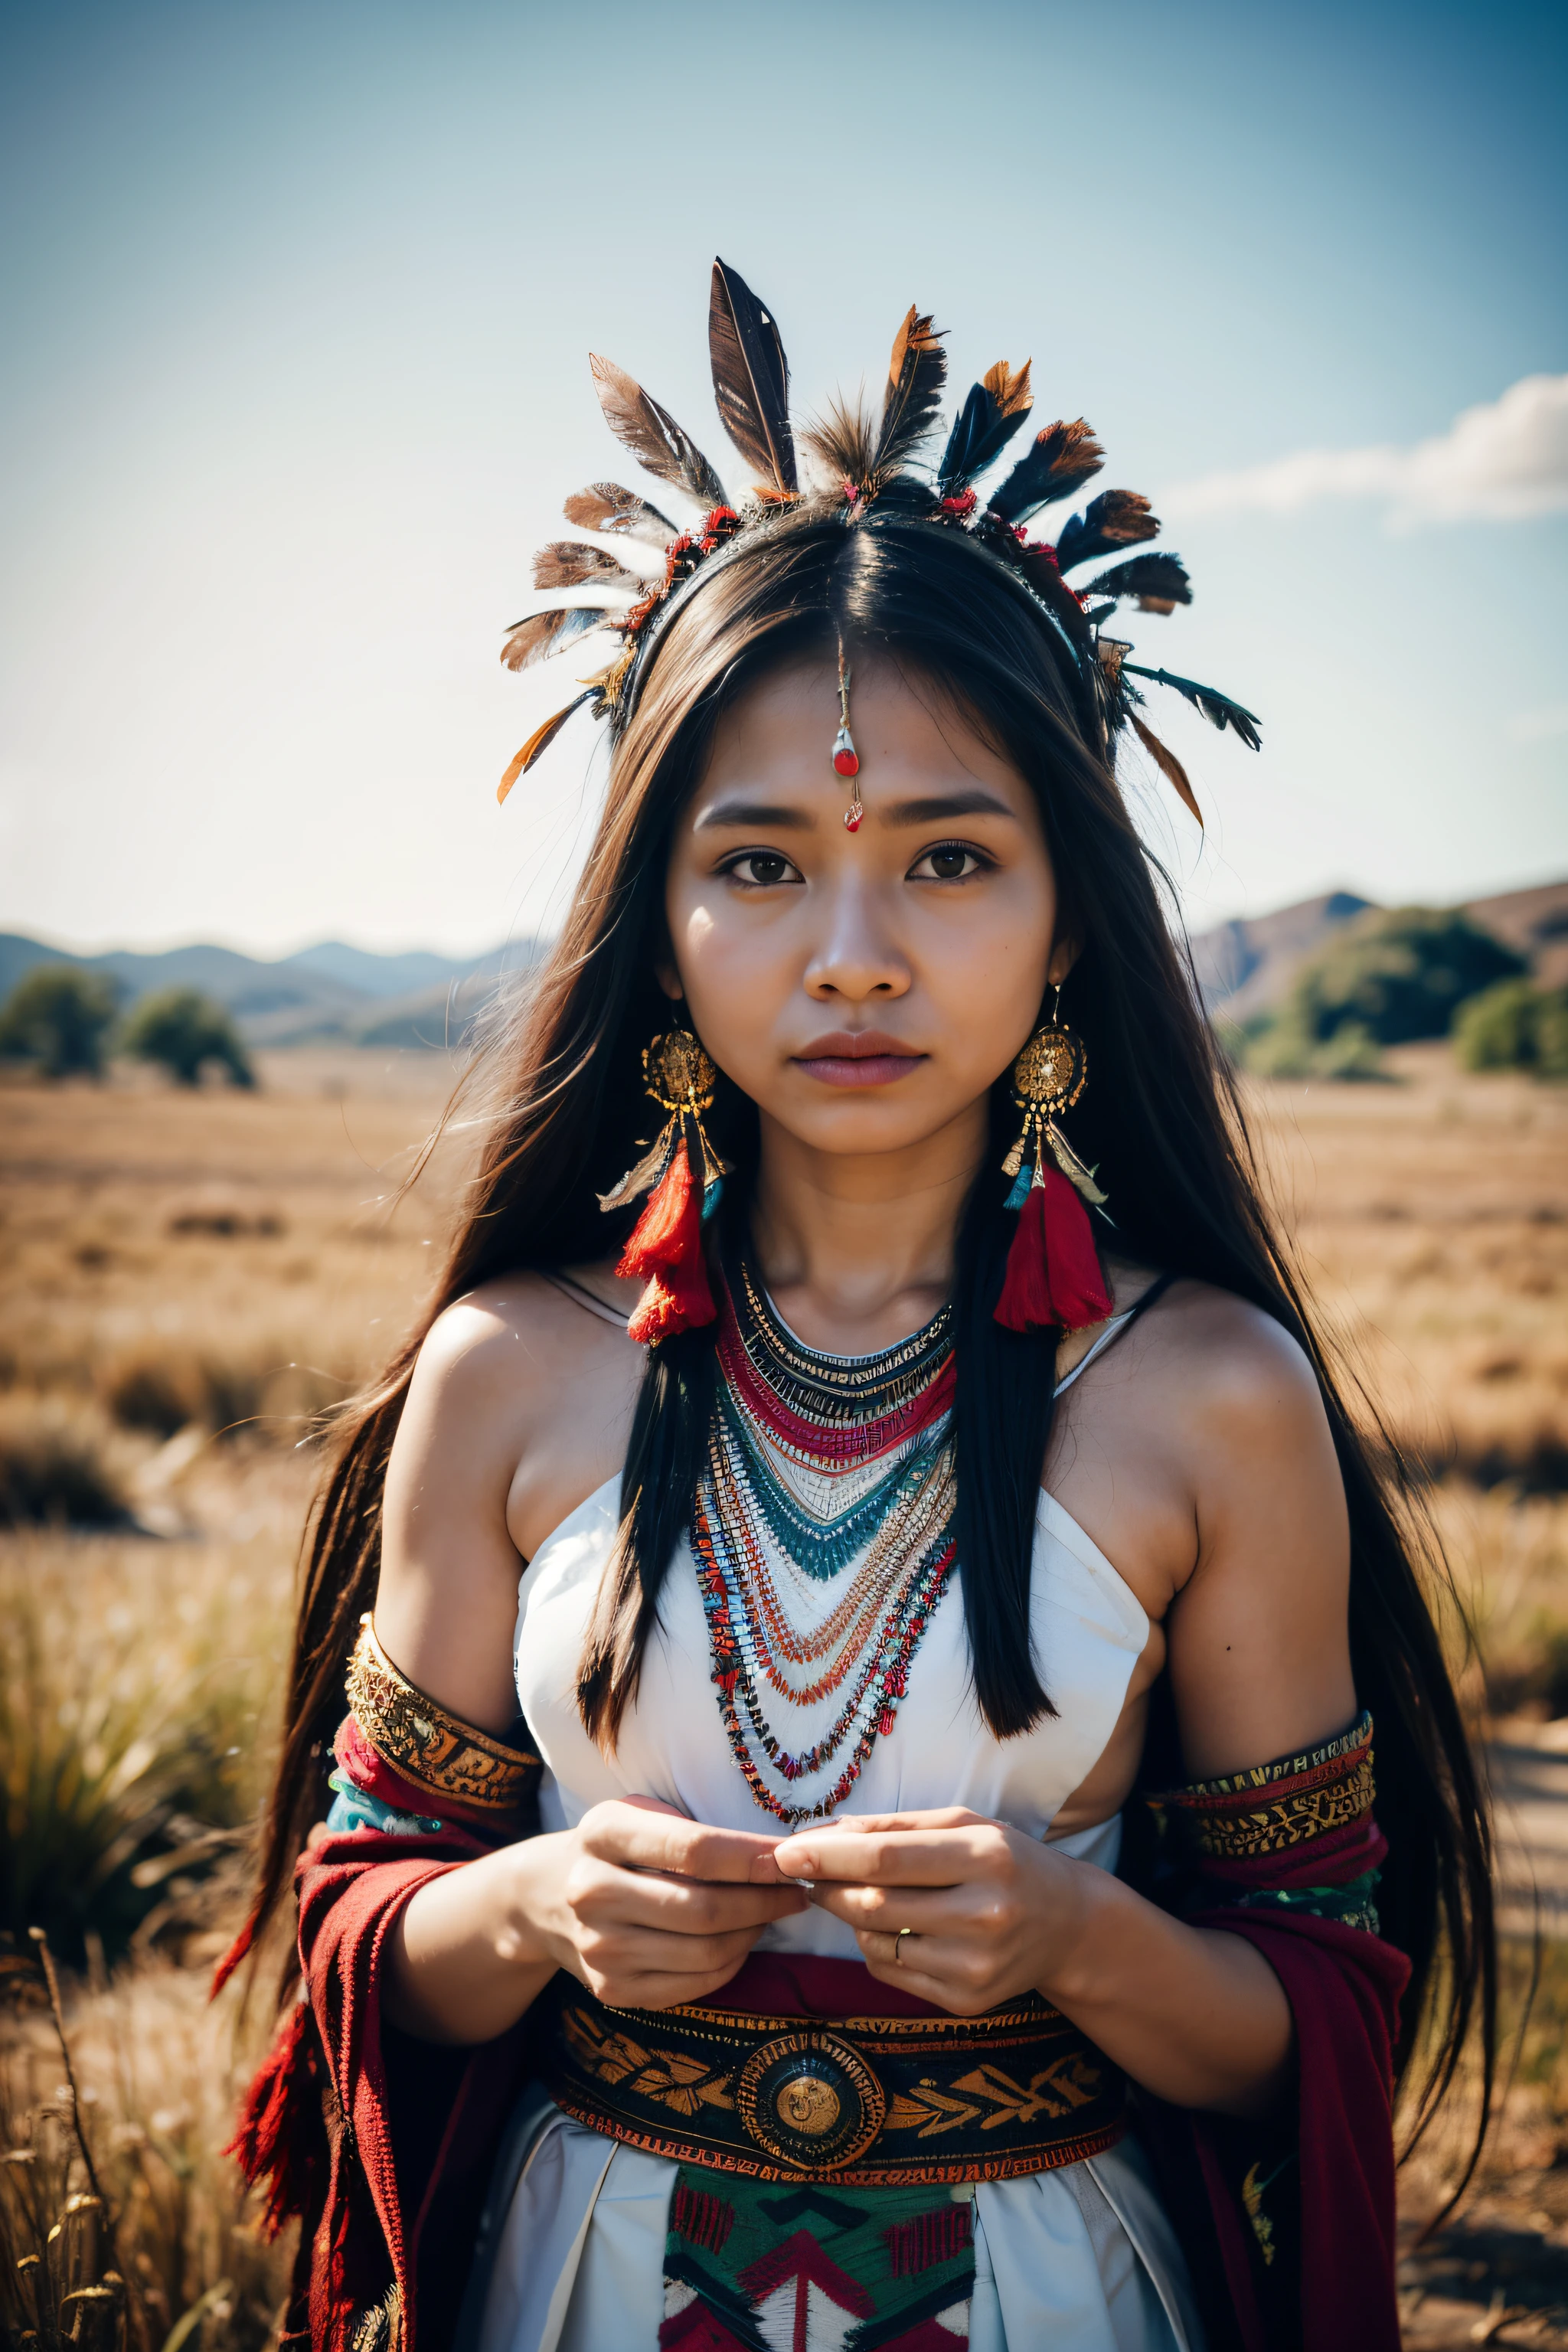 8К, высшее качество, ультра детали, Коренная женщина, Традиционный наряд, головной убор из перьев, племенные узоры, природный фон, гордое выражение, Культурное наследие